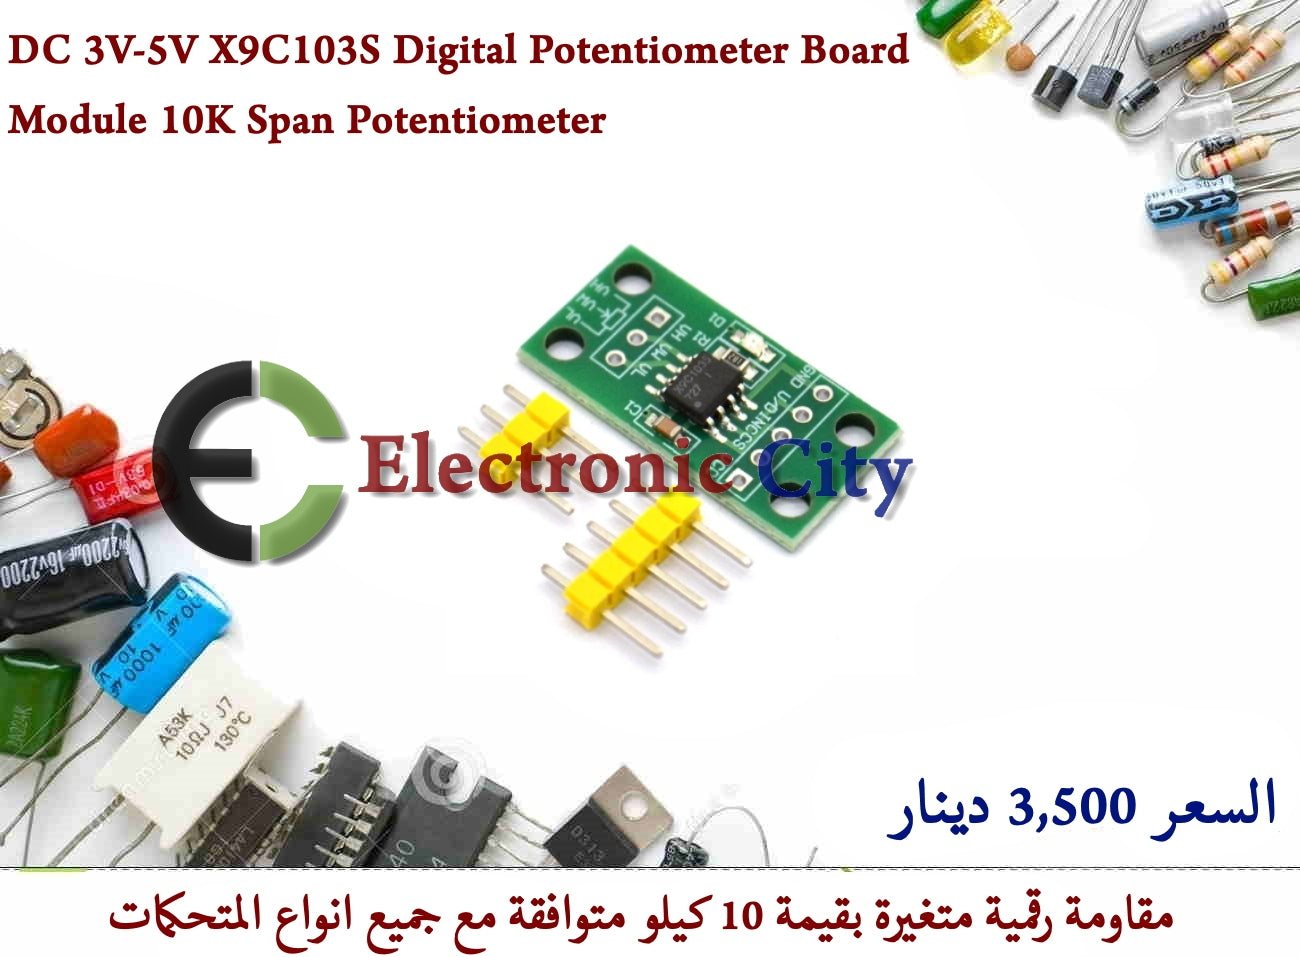 DC 3V-5V X9C103S Digital Potentiometer Board Module 10K Span Potentiometer #S2 011811